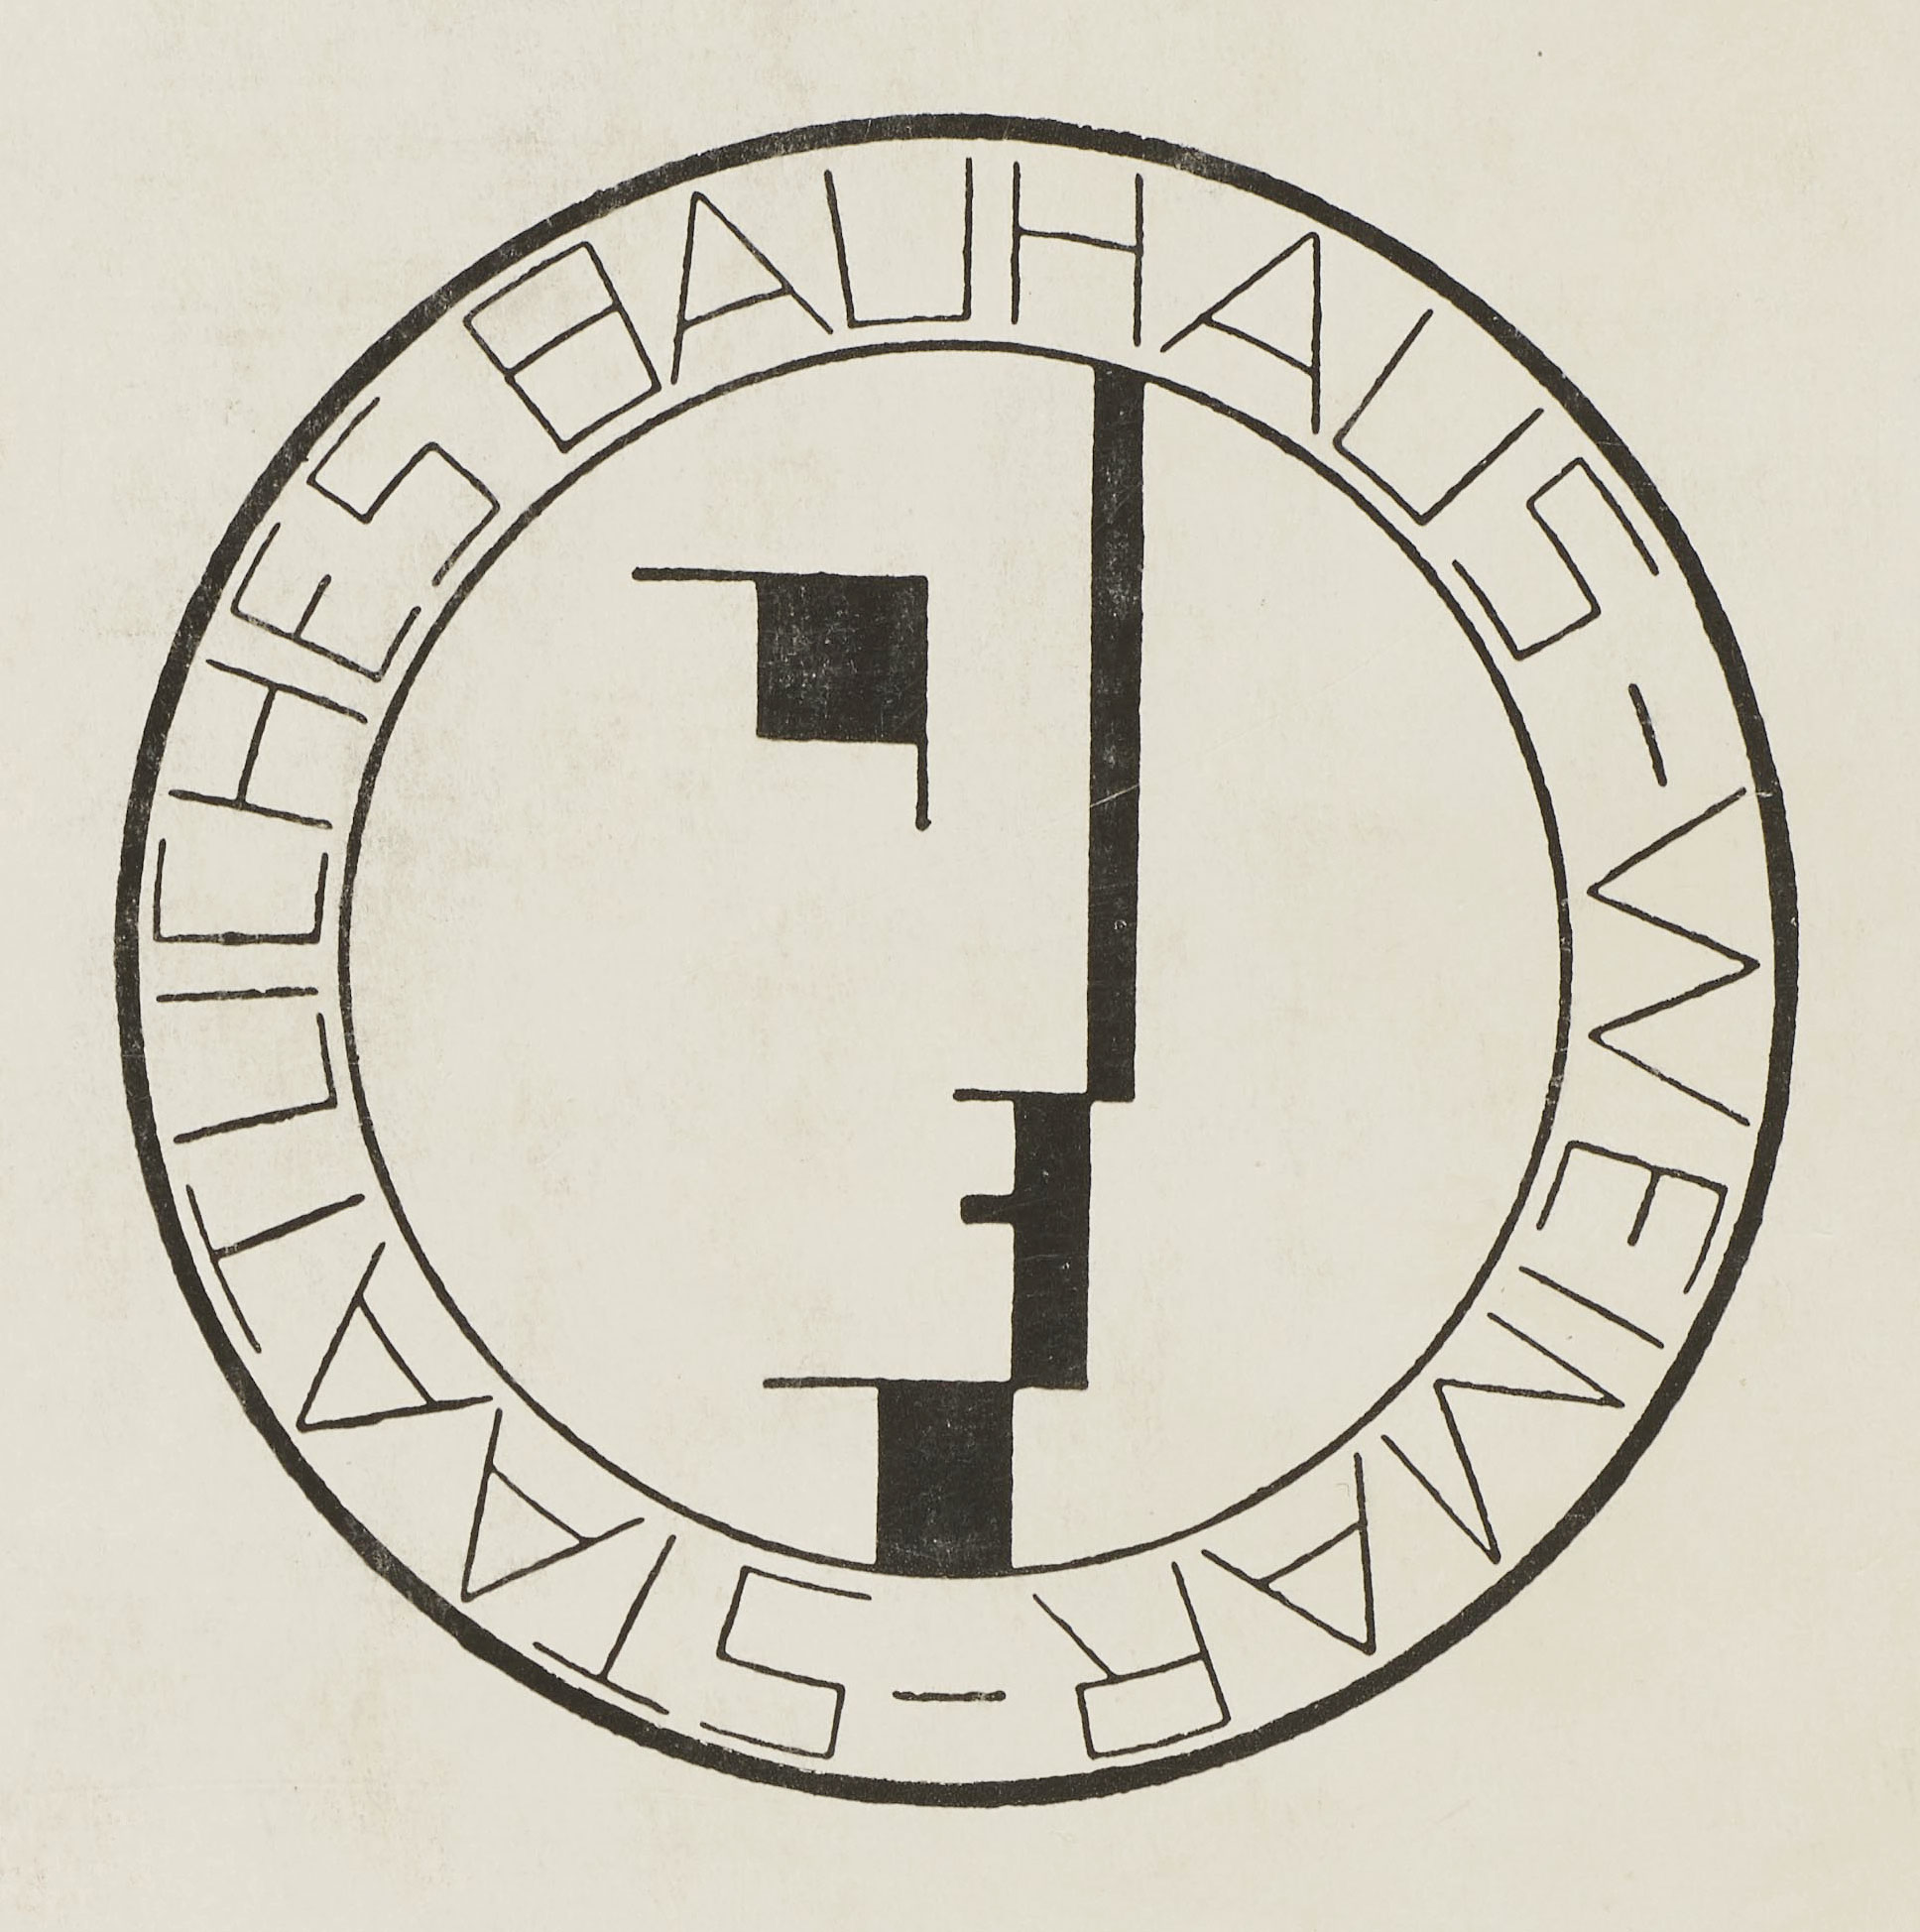 Bauhaus logo by Oskar Schlemmer